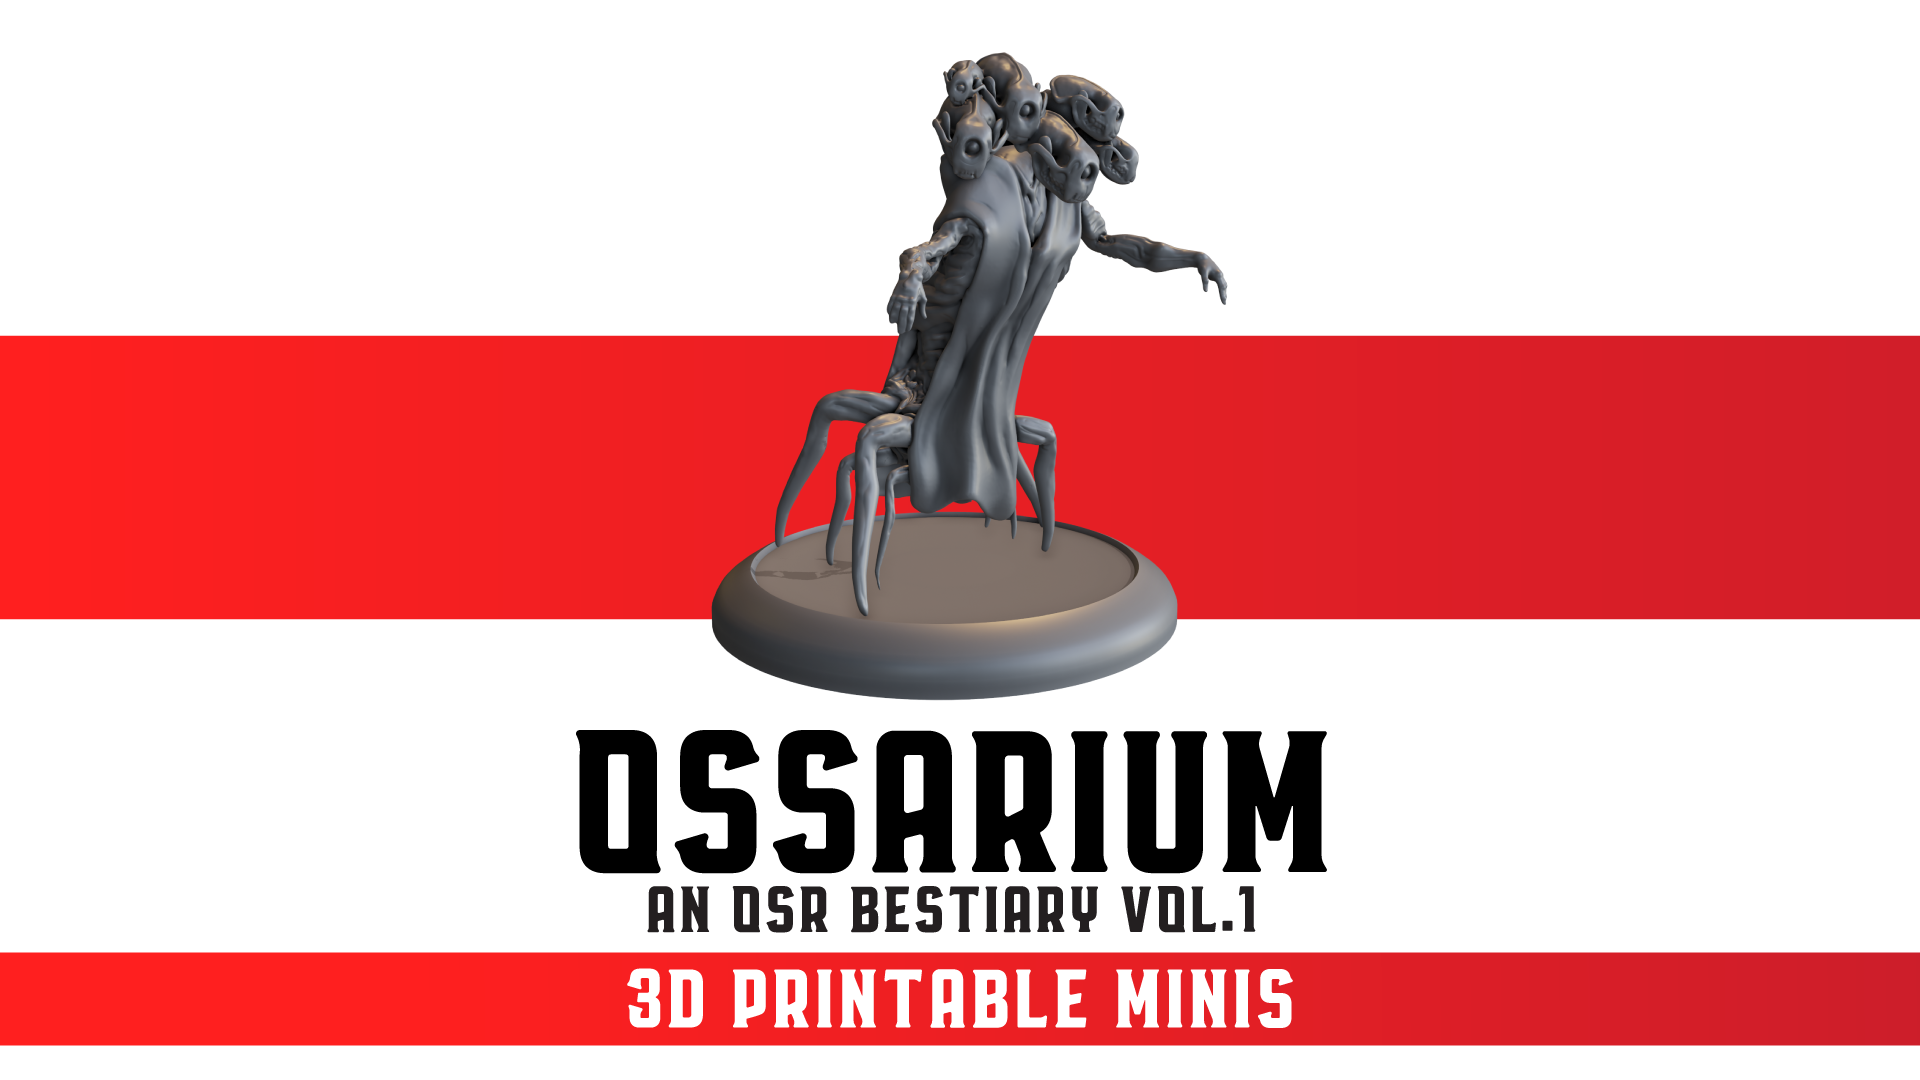 Ossarium Vol. 1 - 3D Printable Minis